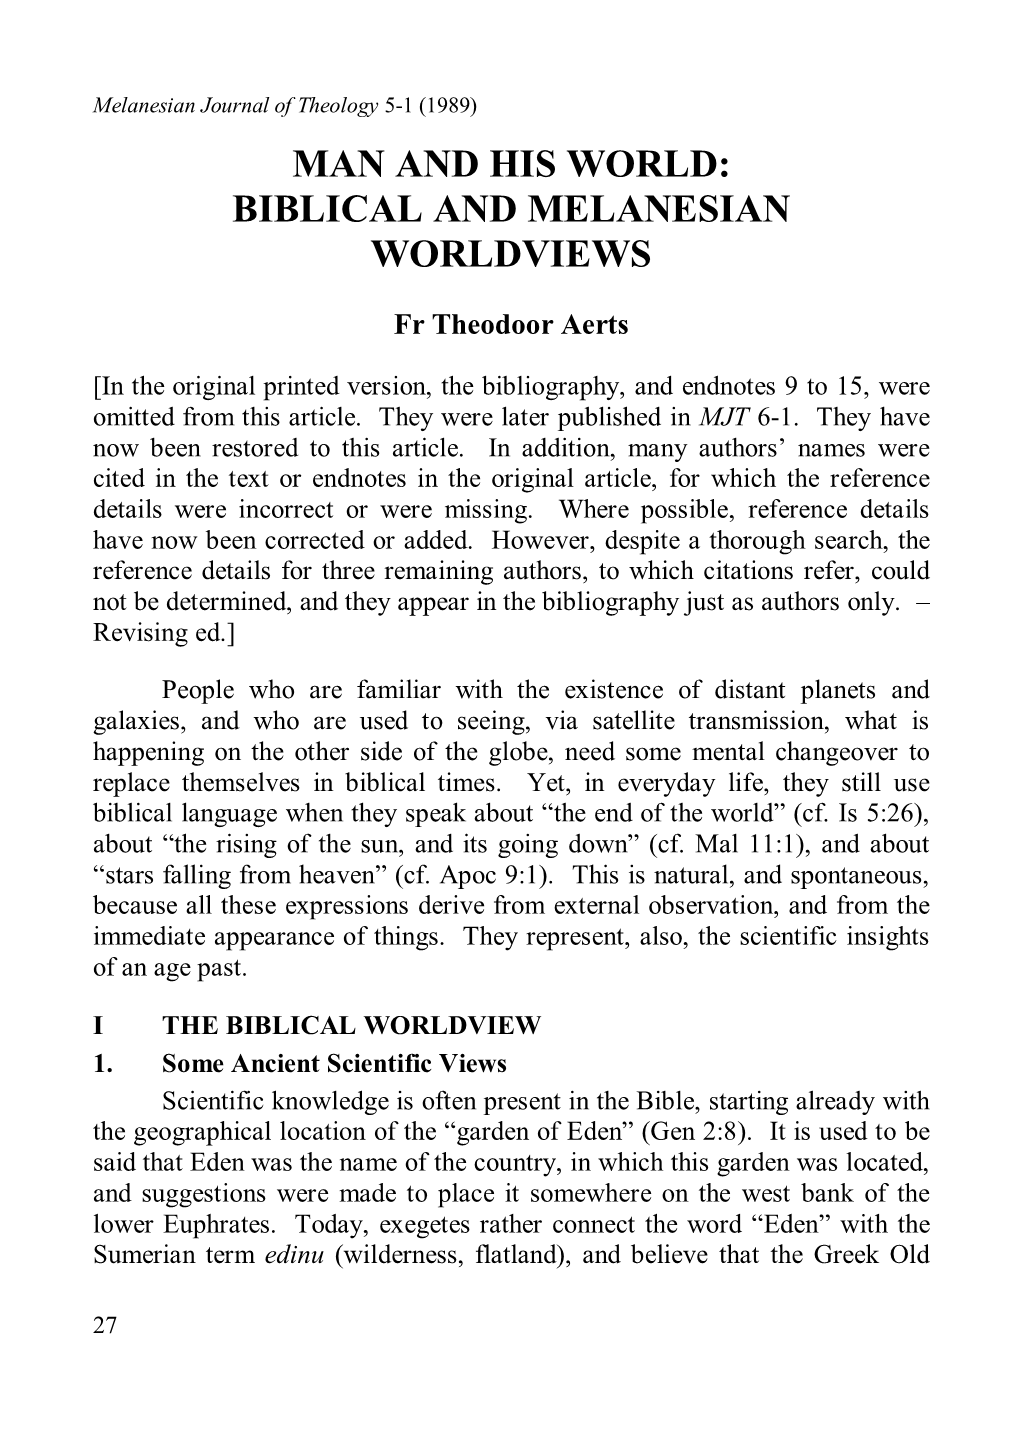 Man and His World: Biblical and Melanesian Worldviews